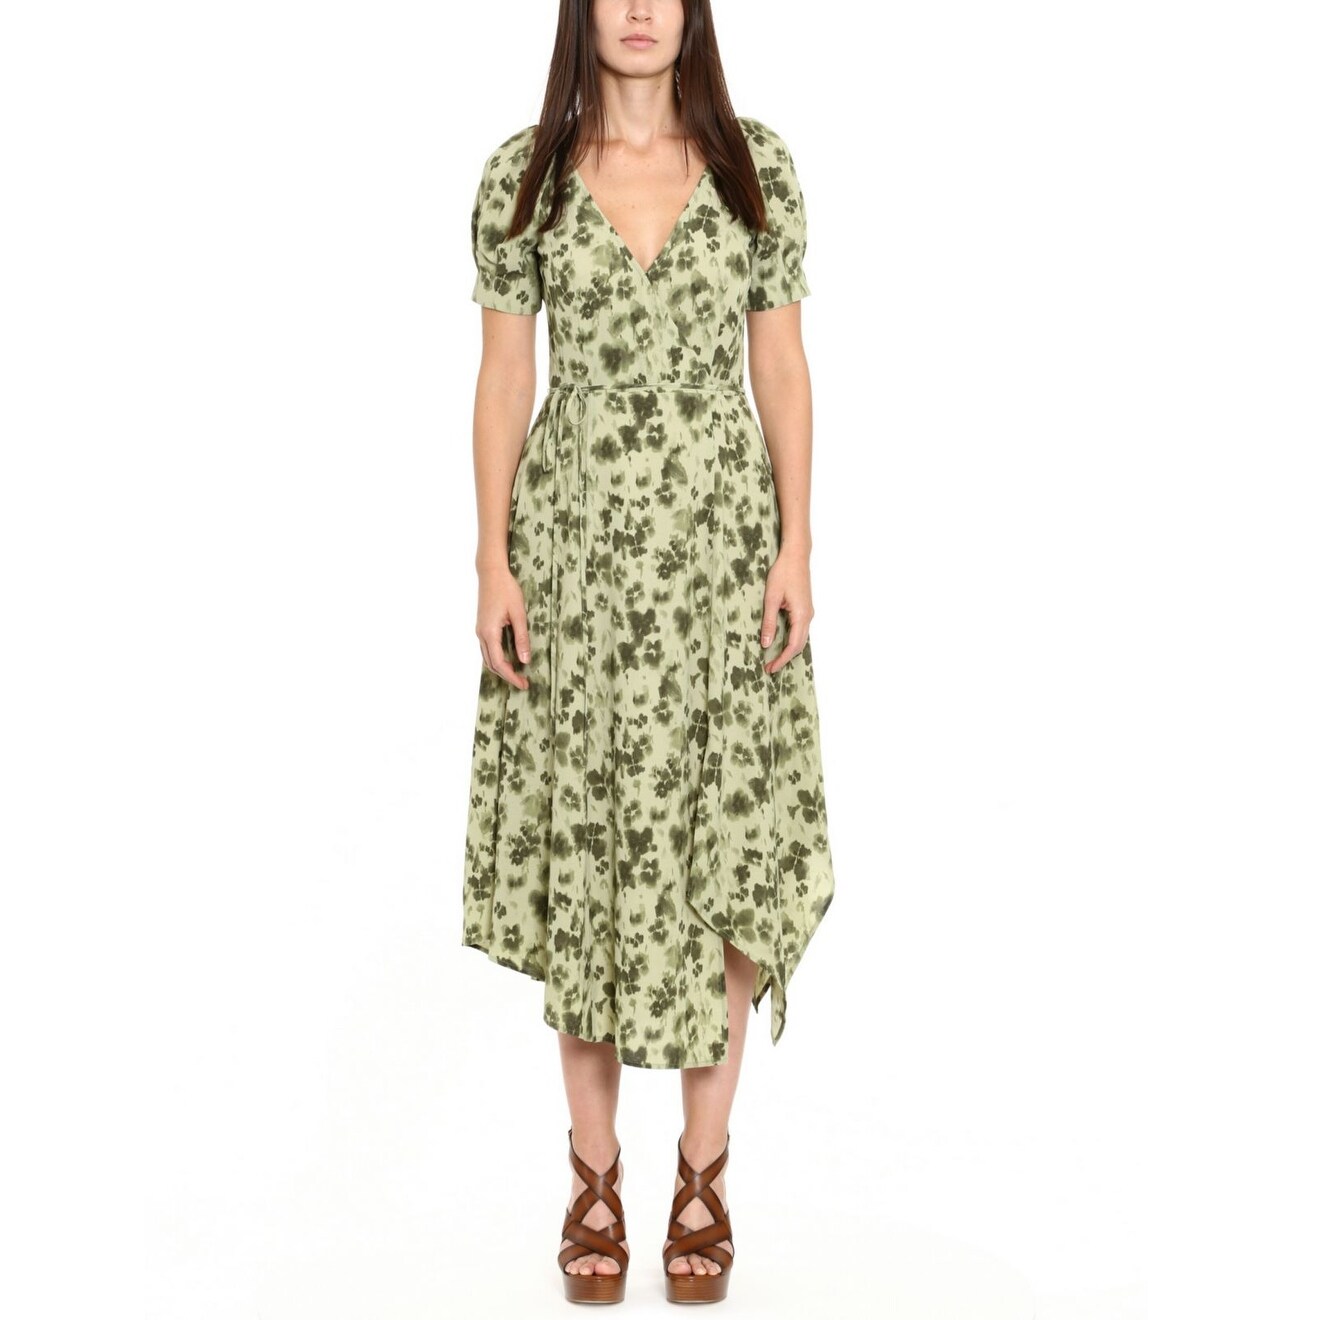 Overstock.com for Michael Kors Womens Printed Medium Wrap Dress | Shop